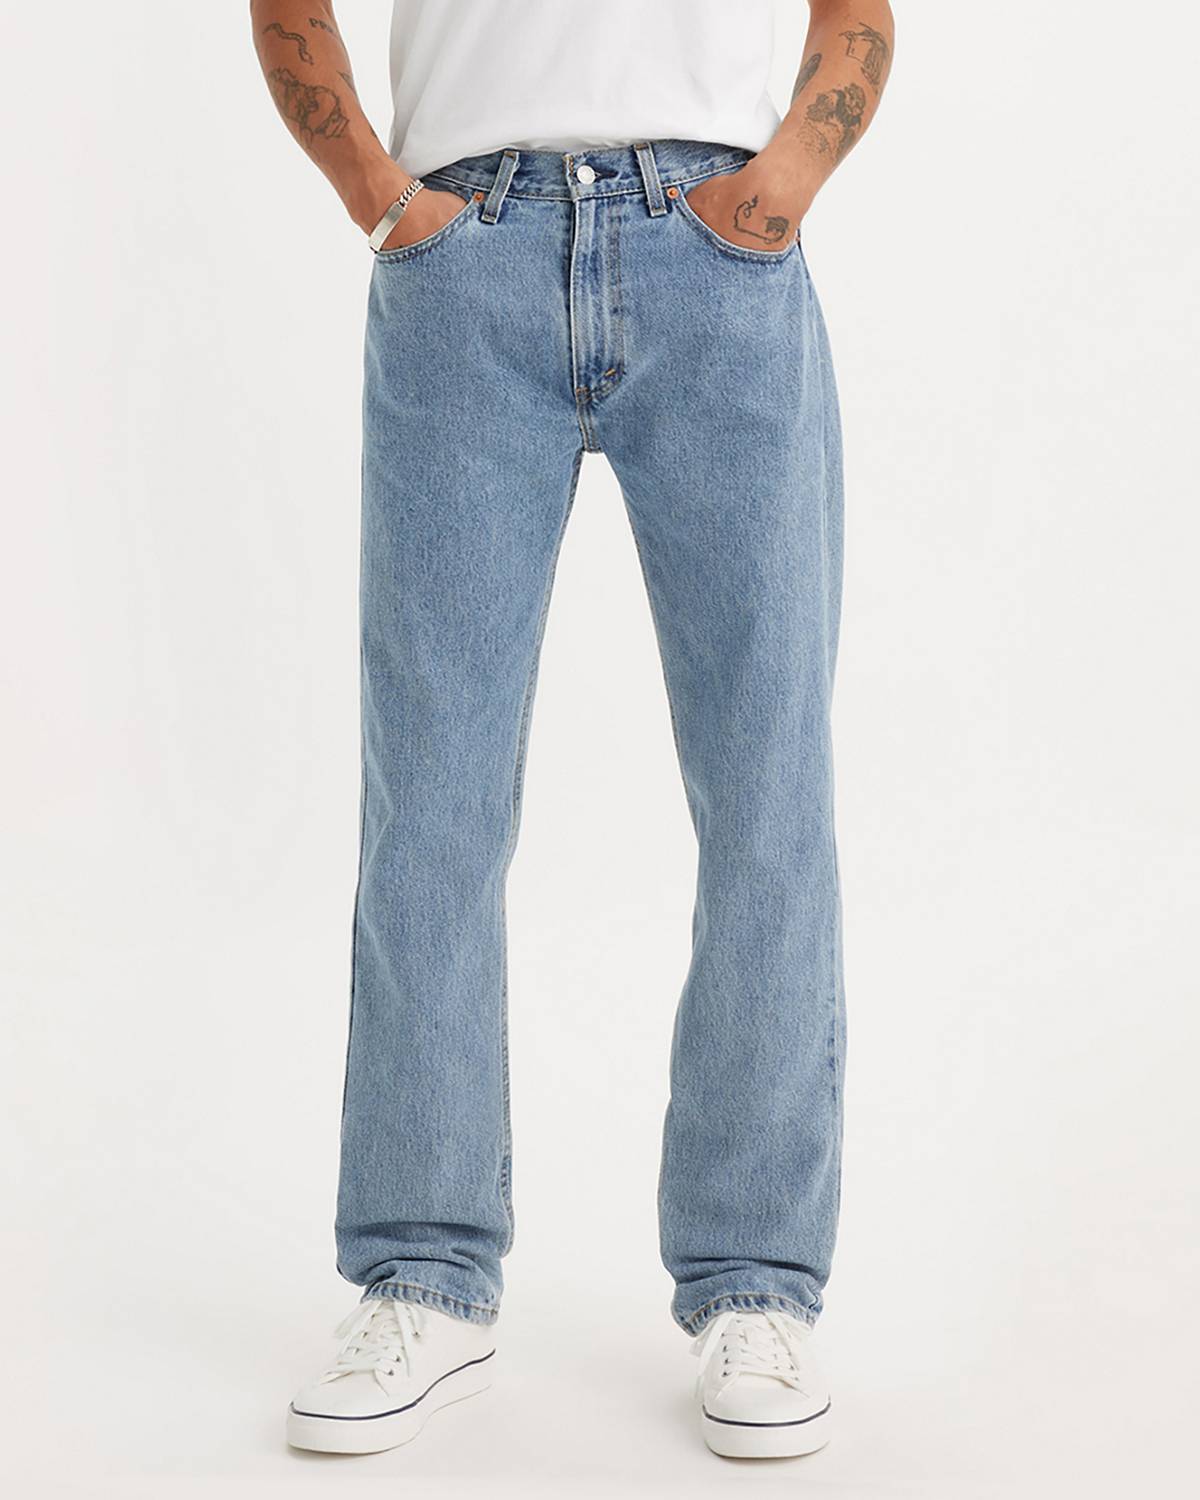 Jeans Fit Guide Men | Levi's®